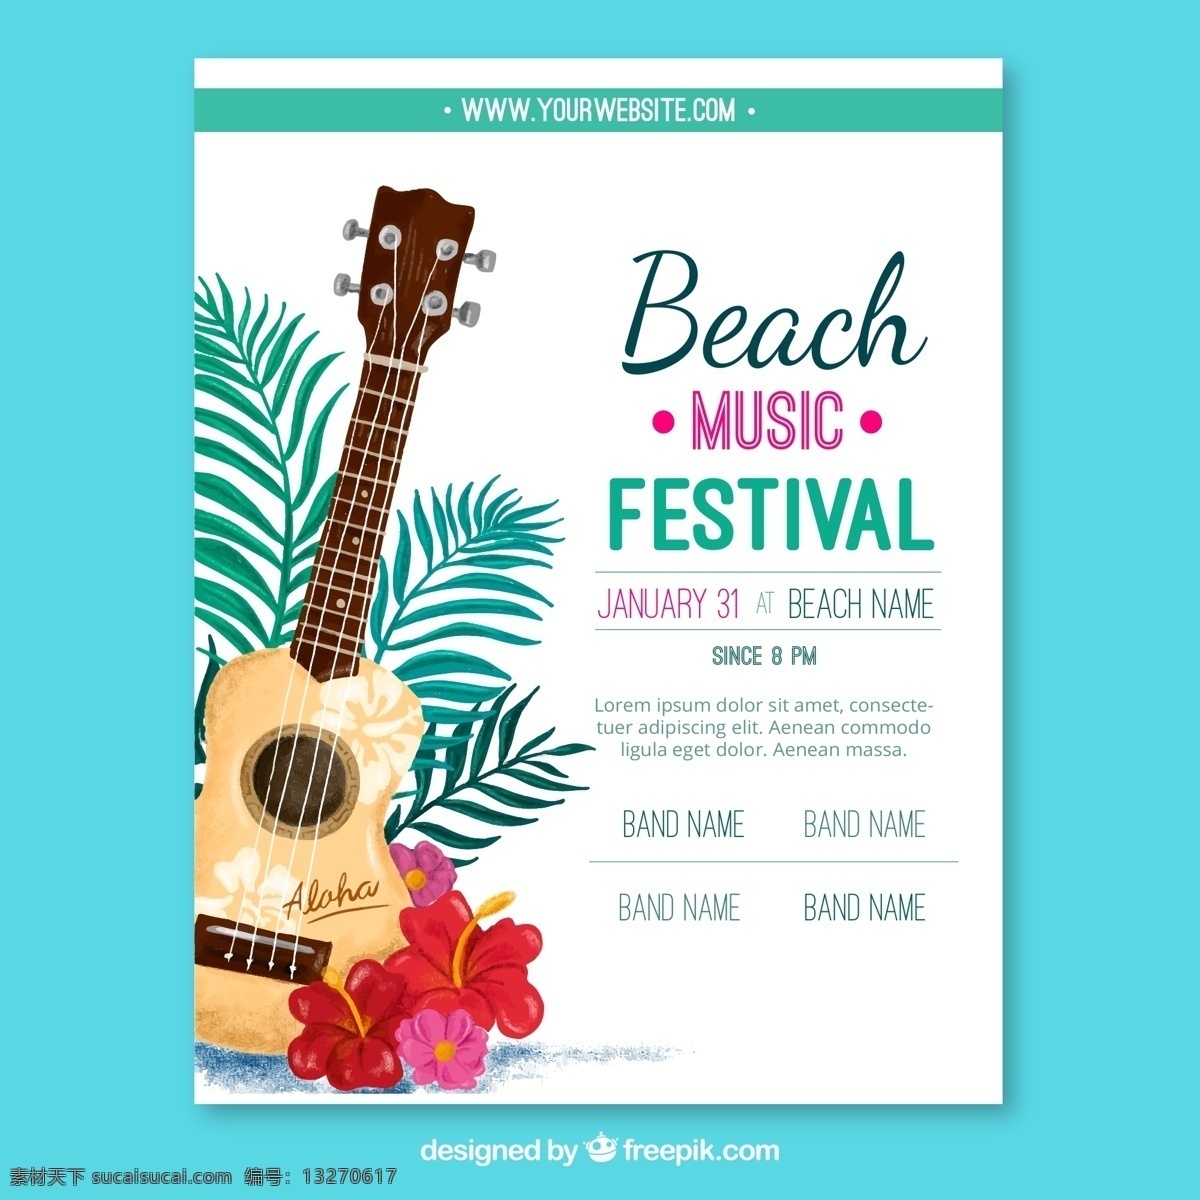 彩绘 吉他 沙滩 音乐节 宣传单 棕榈树叶 扶桑花 时间 音乐 广告海报设计